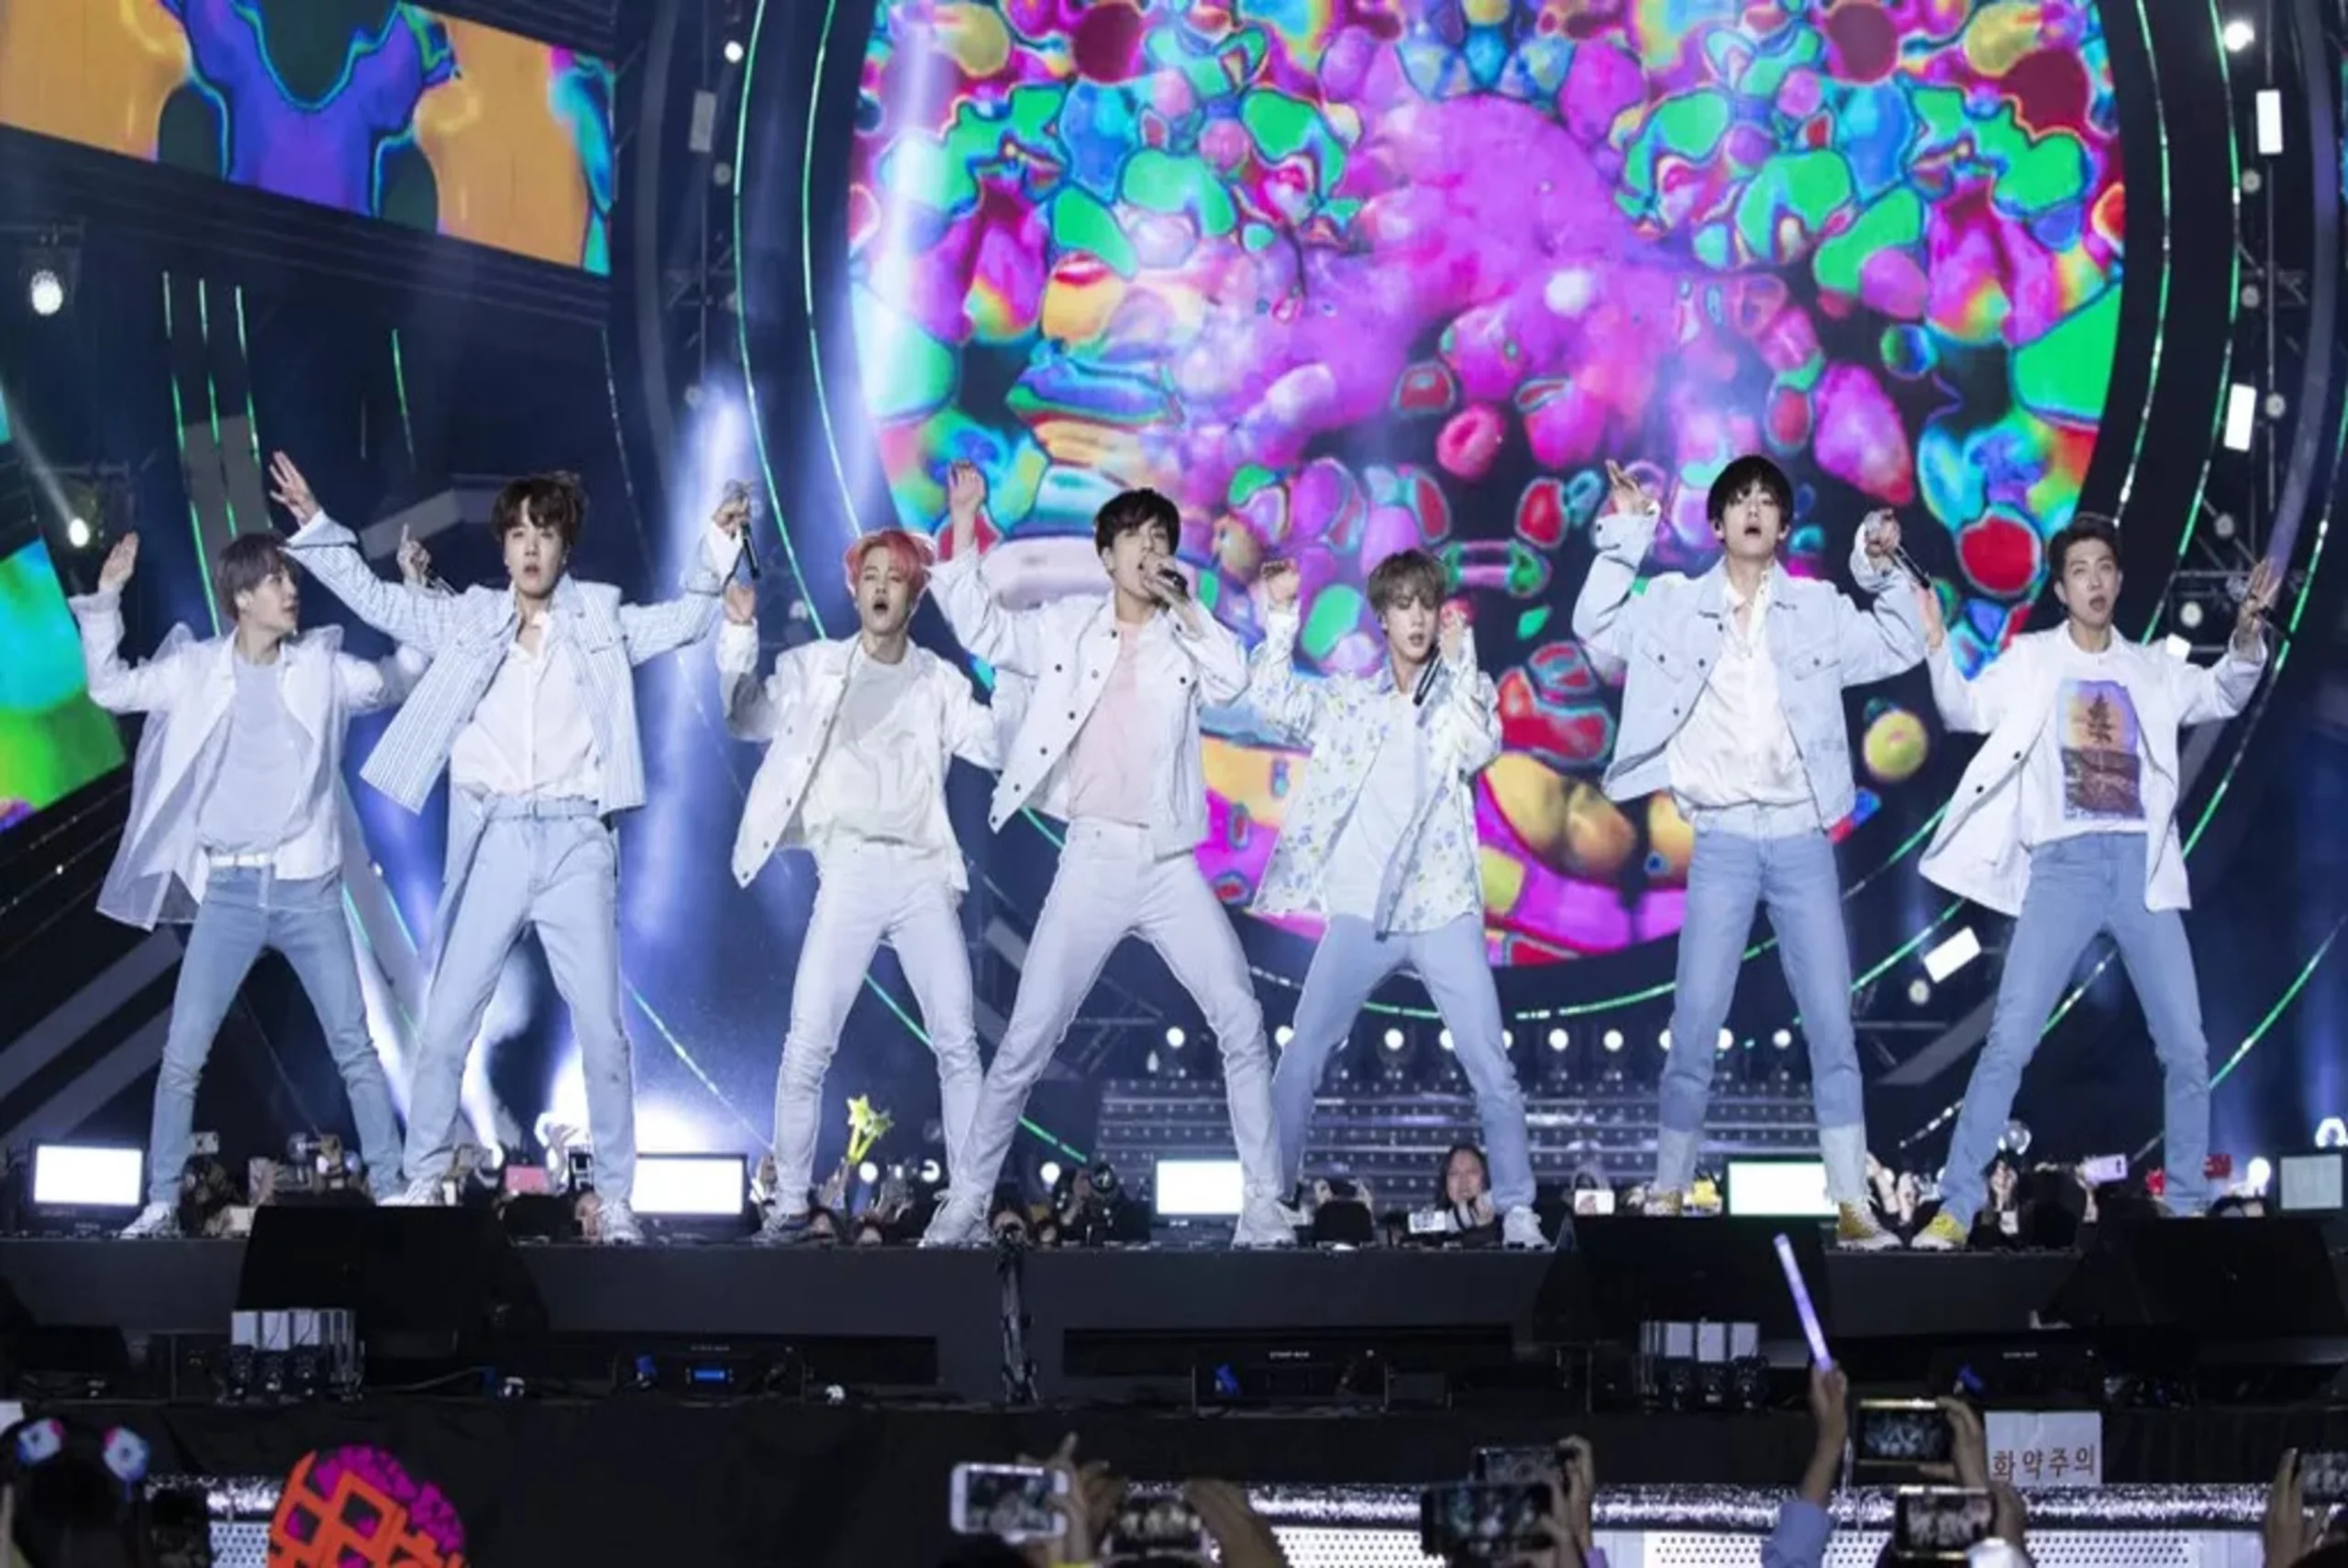 Concert du boys band sud-coréen MCND organisé par light show design